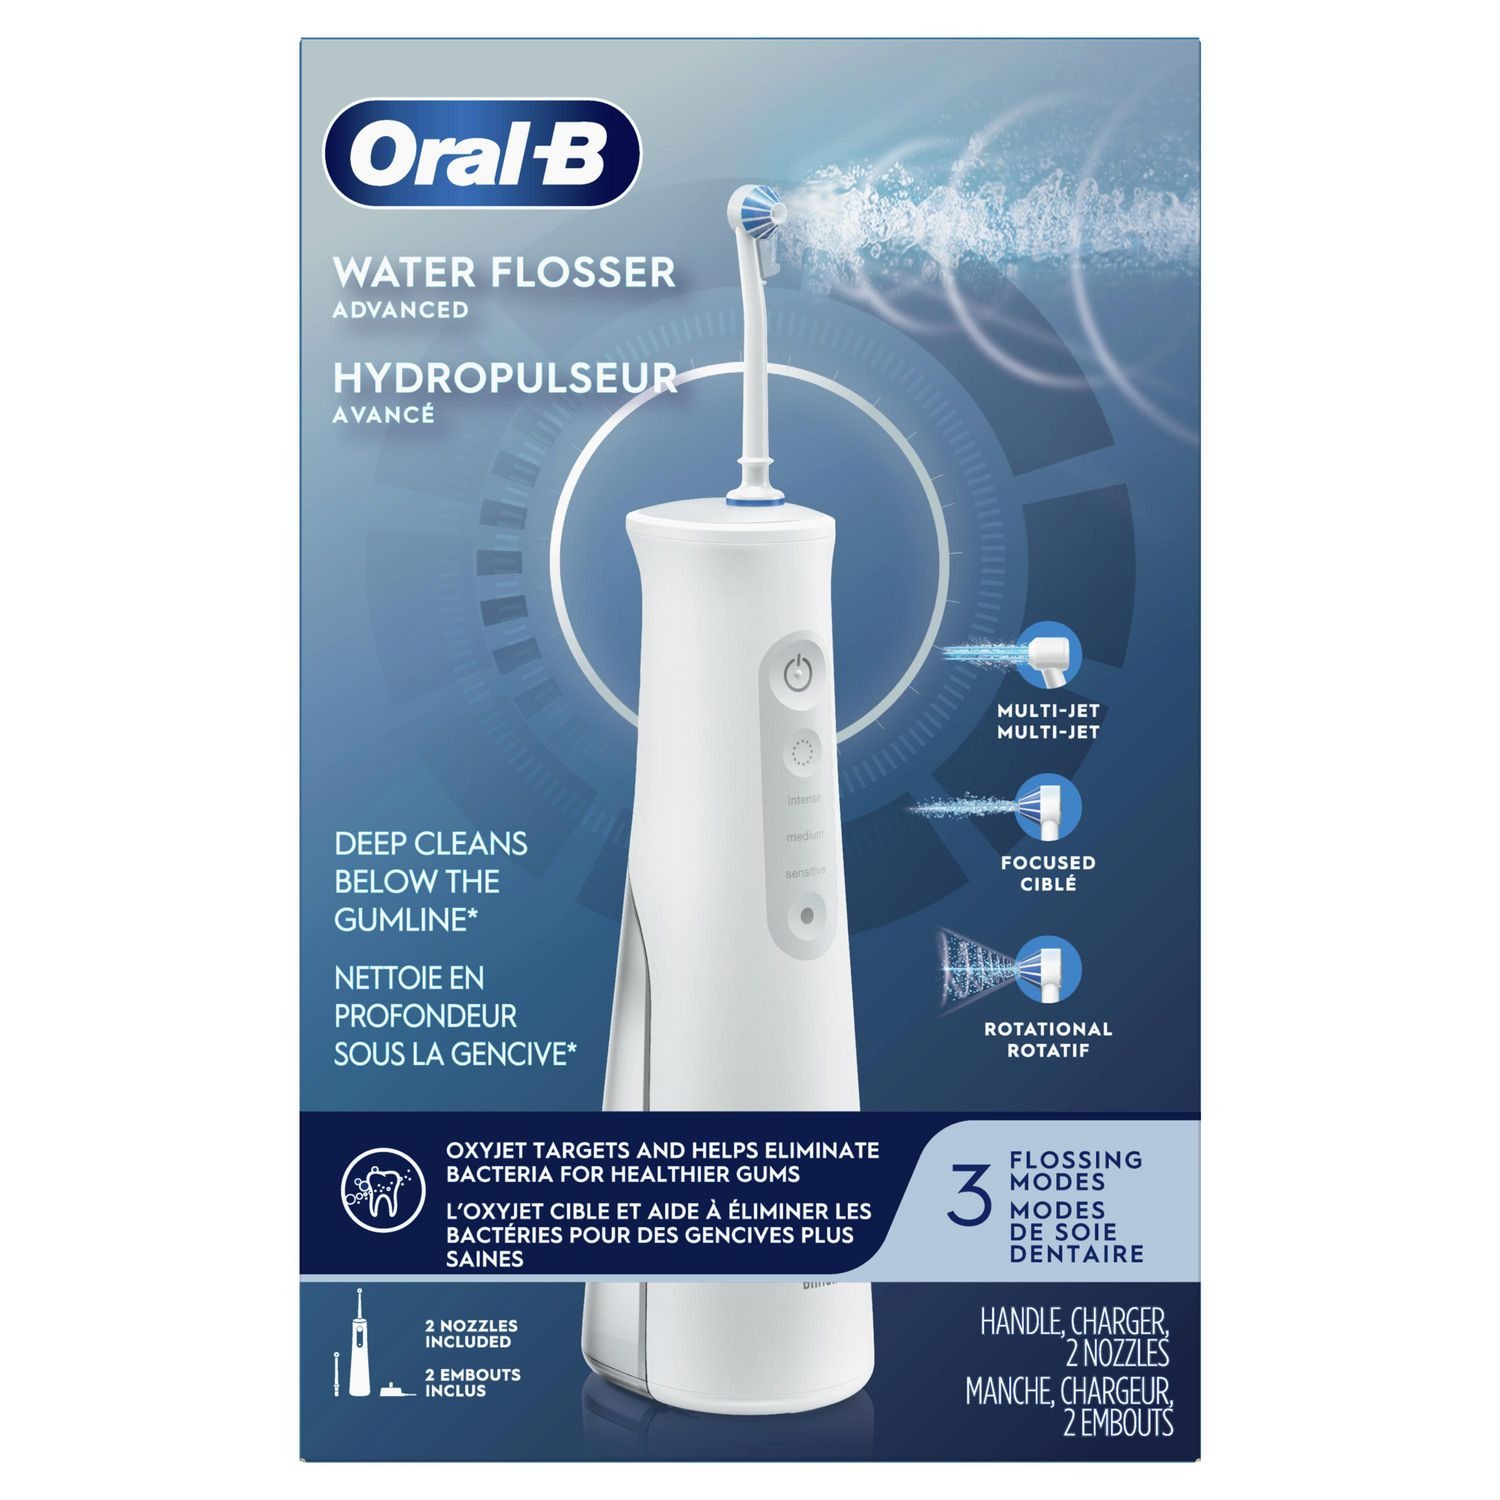 Tăm nước Oral B Aquacare 6 với 3 chế độ luông nước